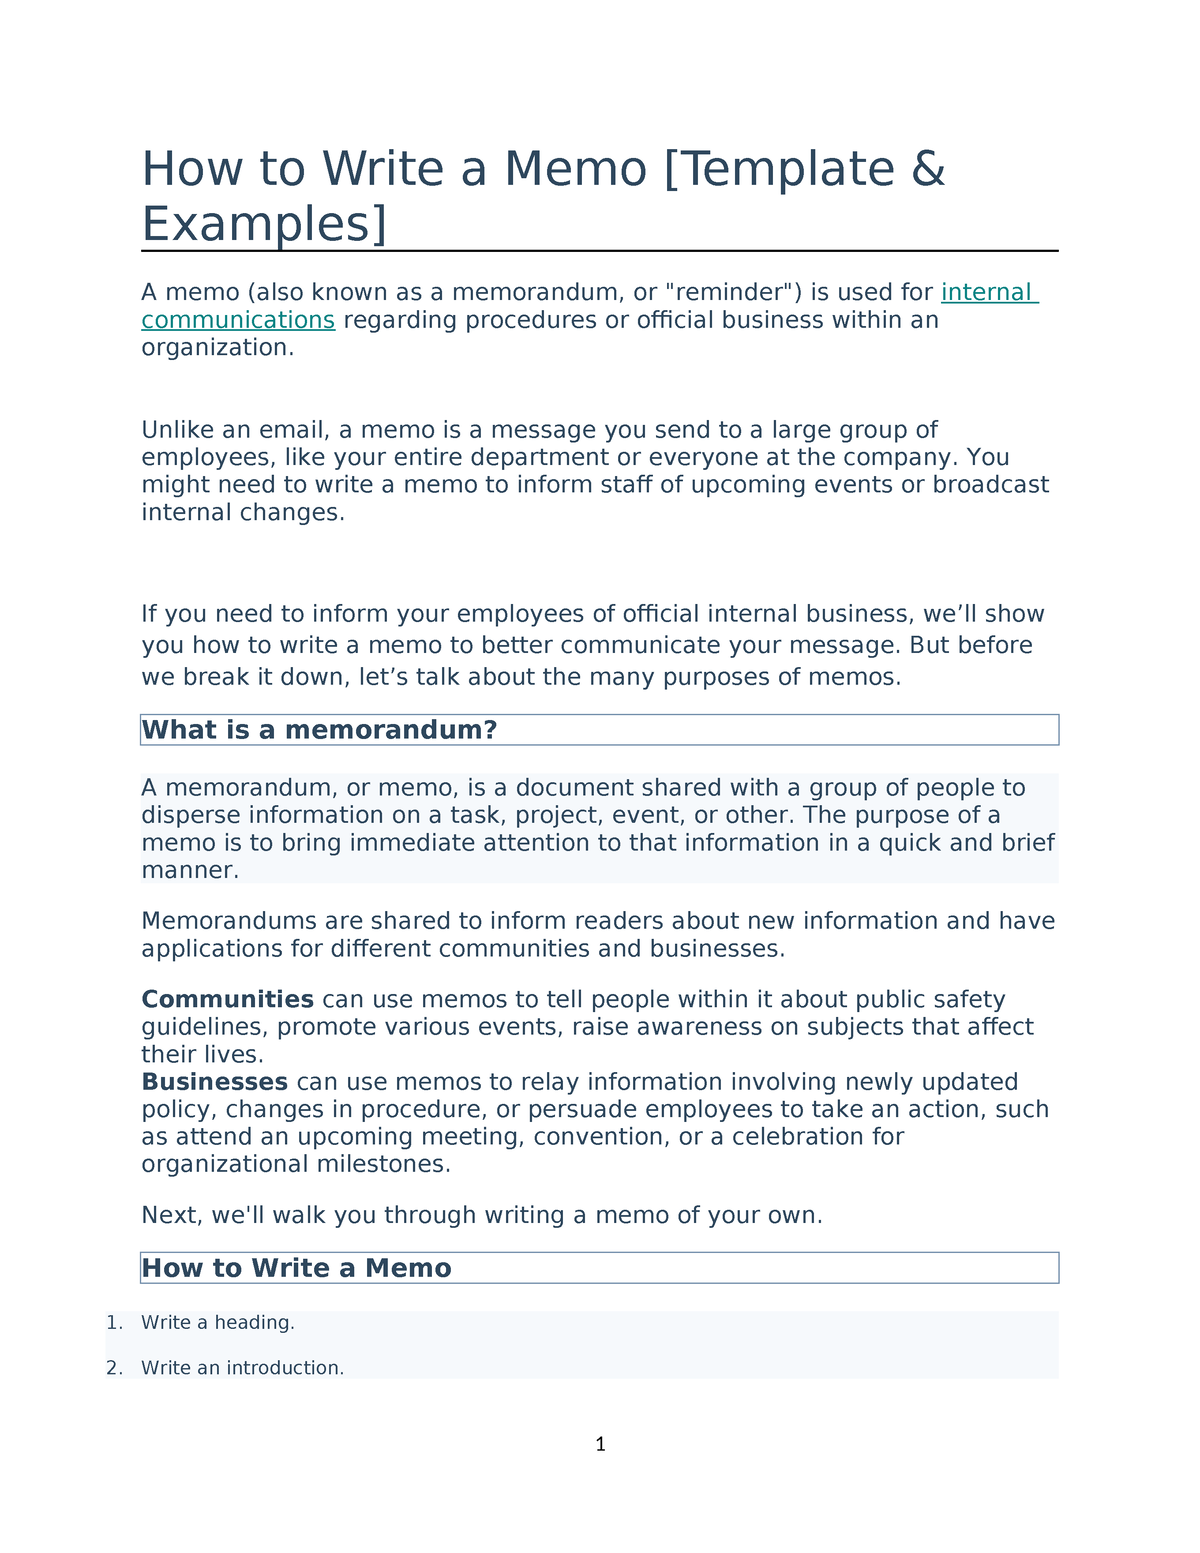 How to write a memo 7th Semester CON - How to Write a Memo [Template &  Examples] A memo (also - Studocu